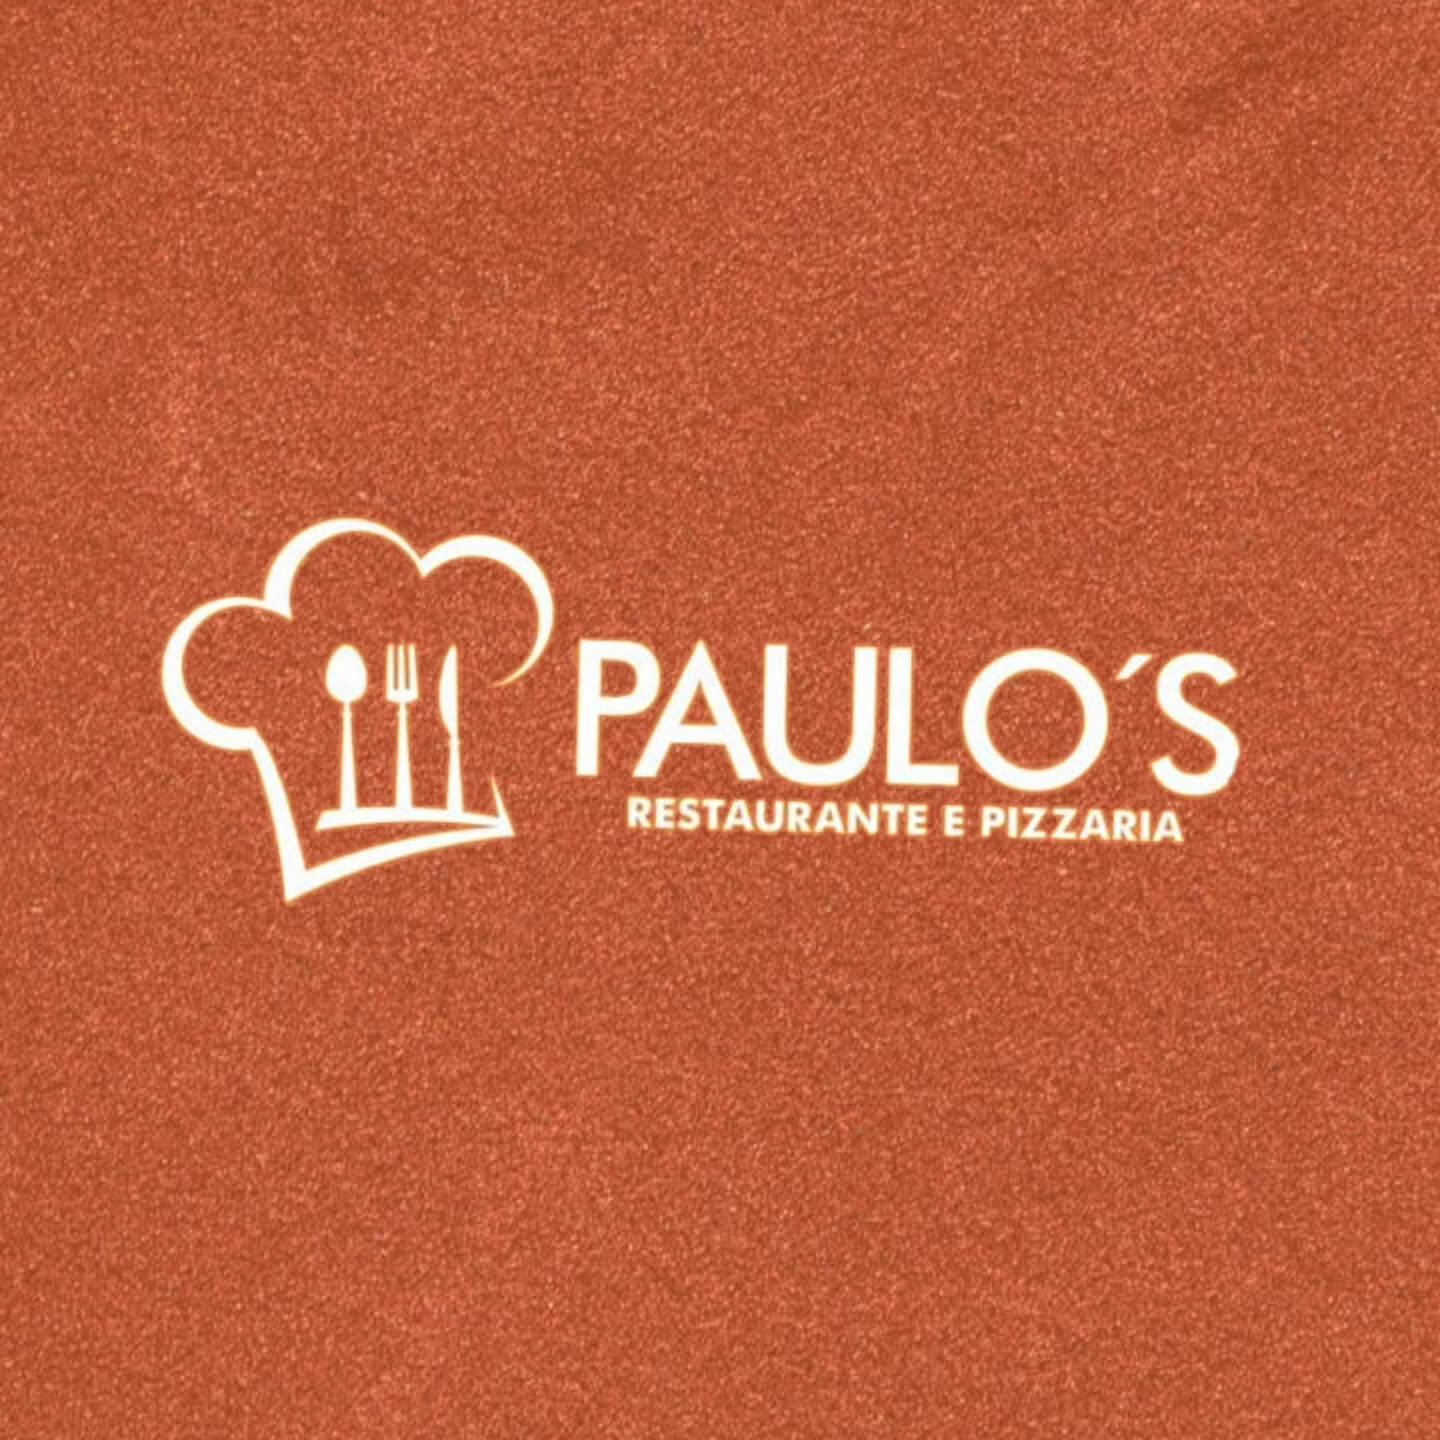 Paulo’s Restaurante e Pizzaria